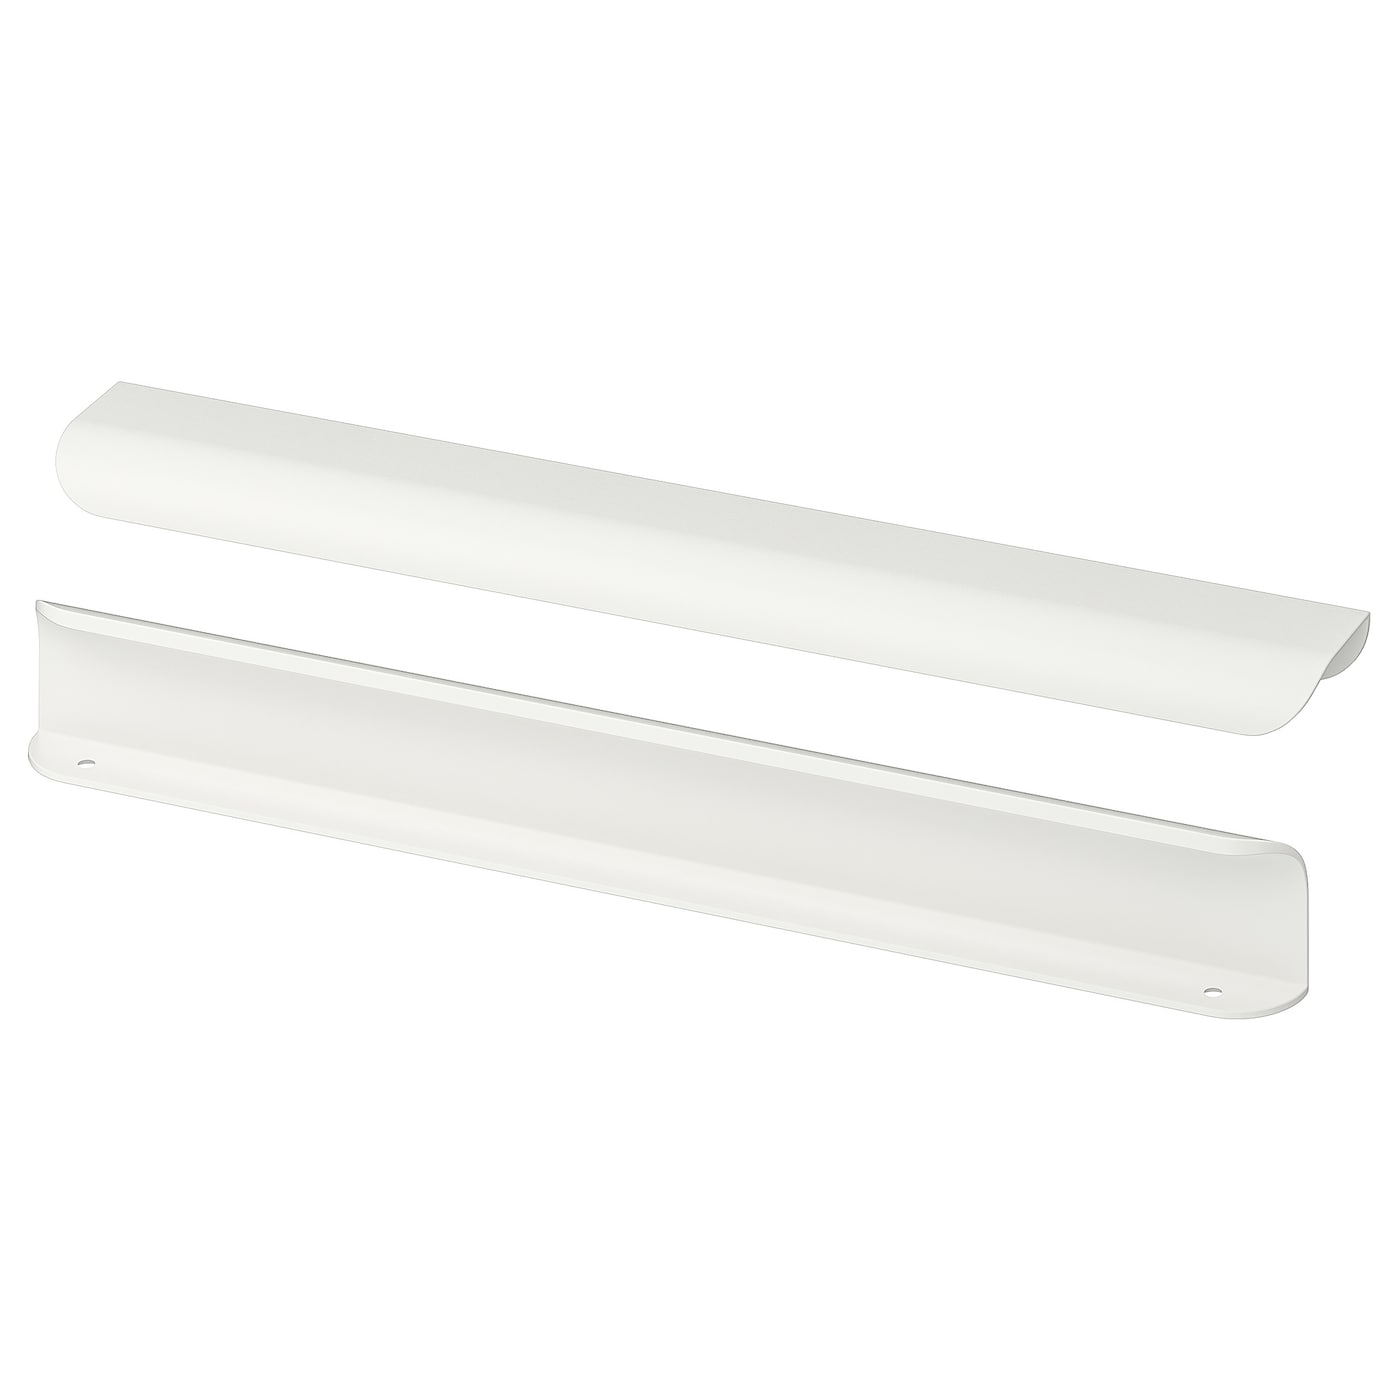 Ручка-скоба - IKEA BILLSBRO, 32 см, белый, БИЛЛЬСБРУ ИКЕА